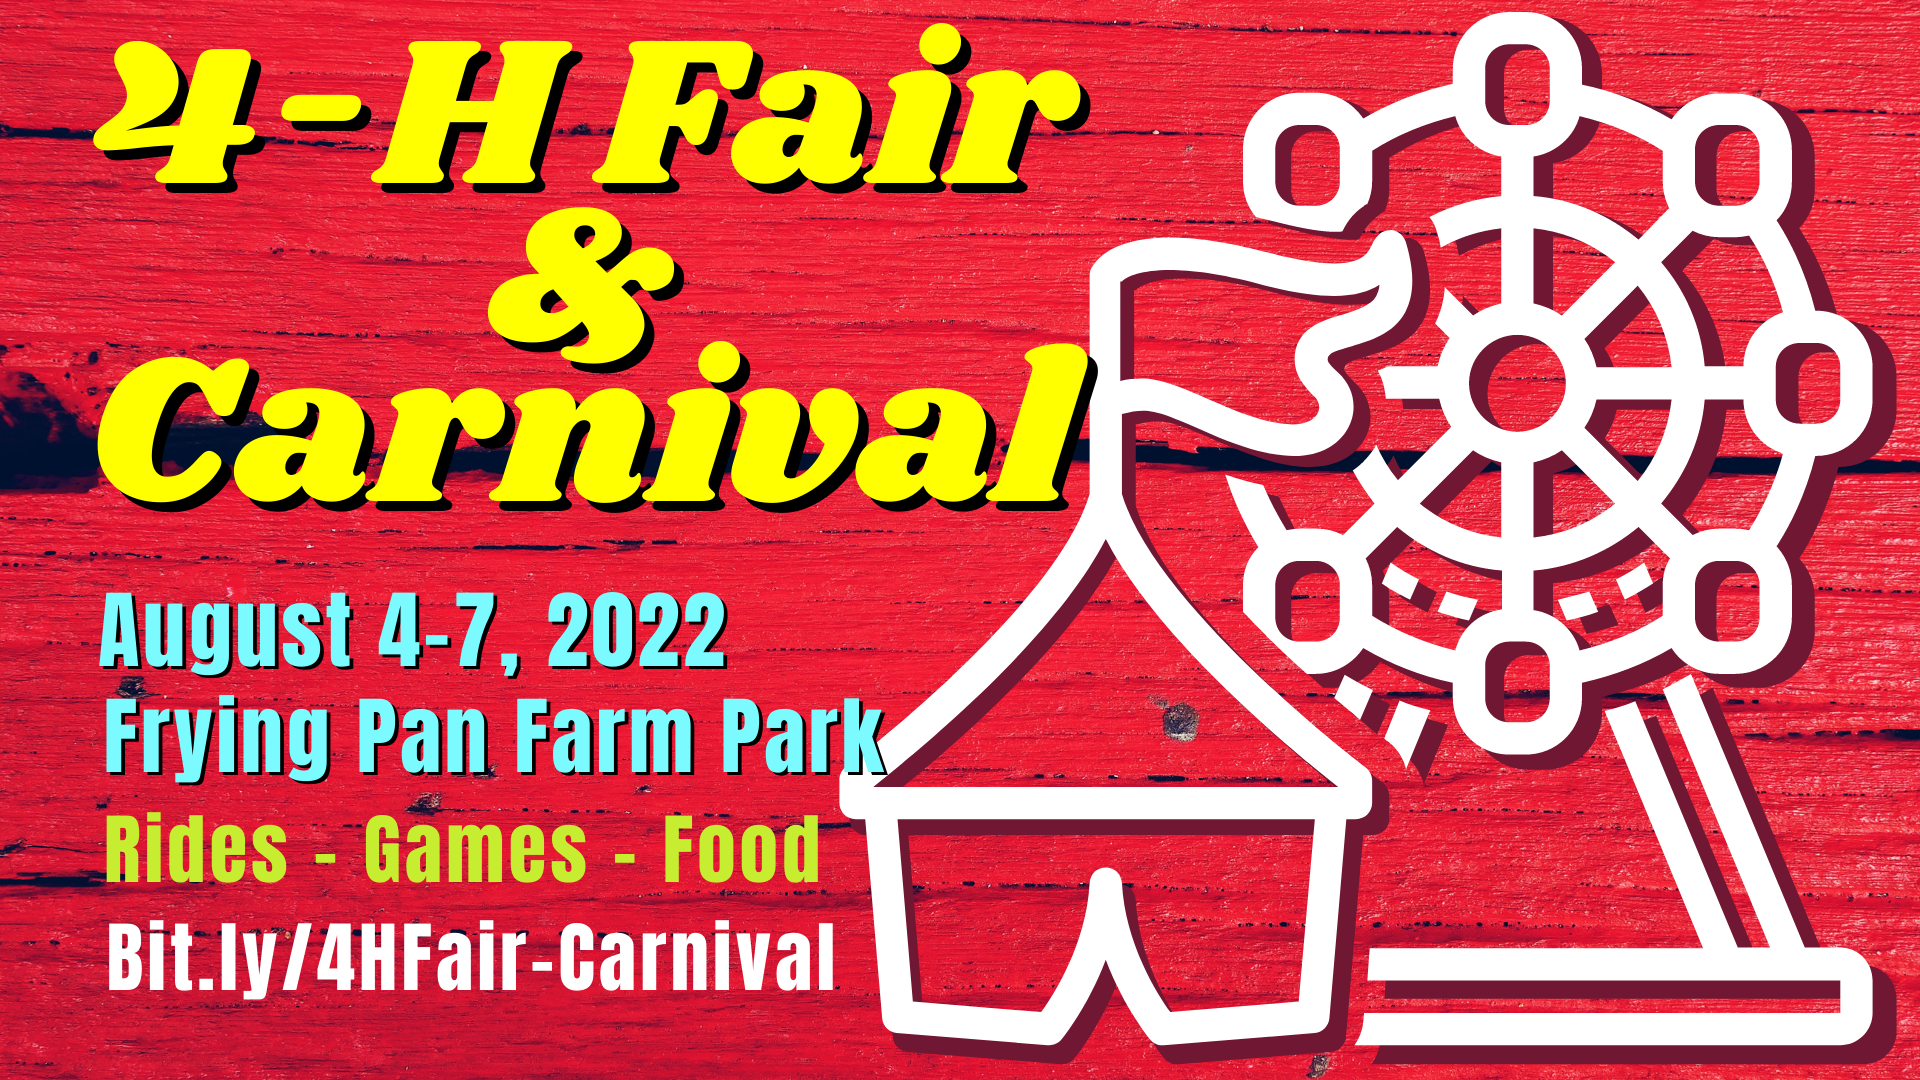 4-H Fair & Carnival